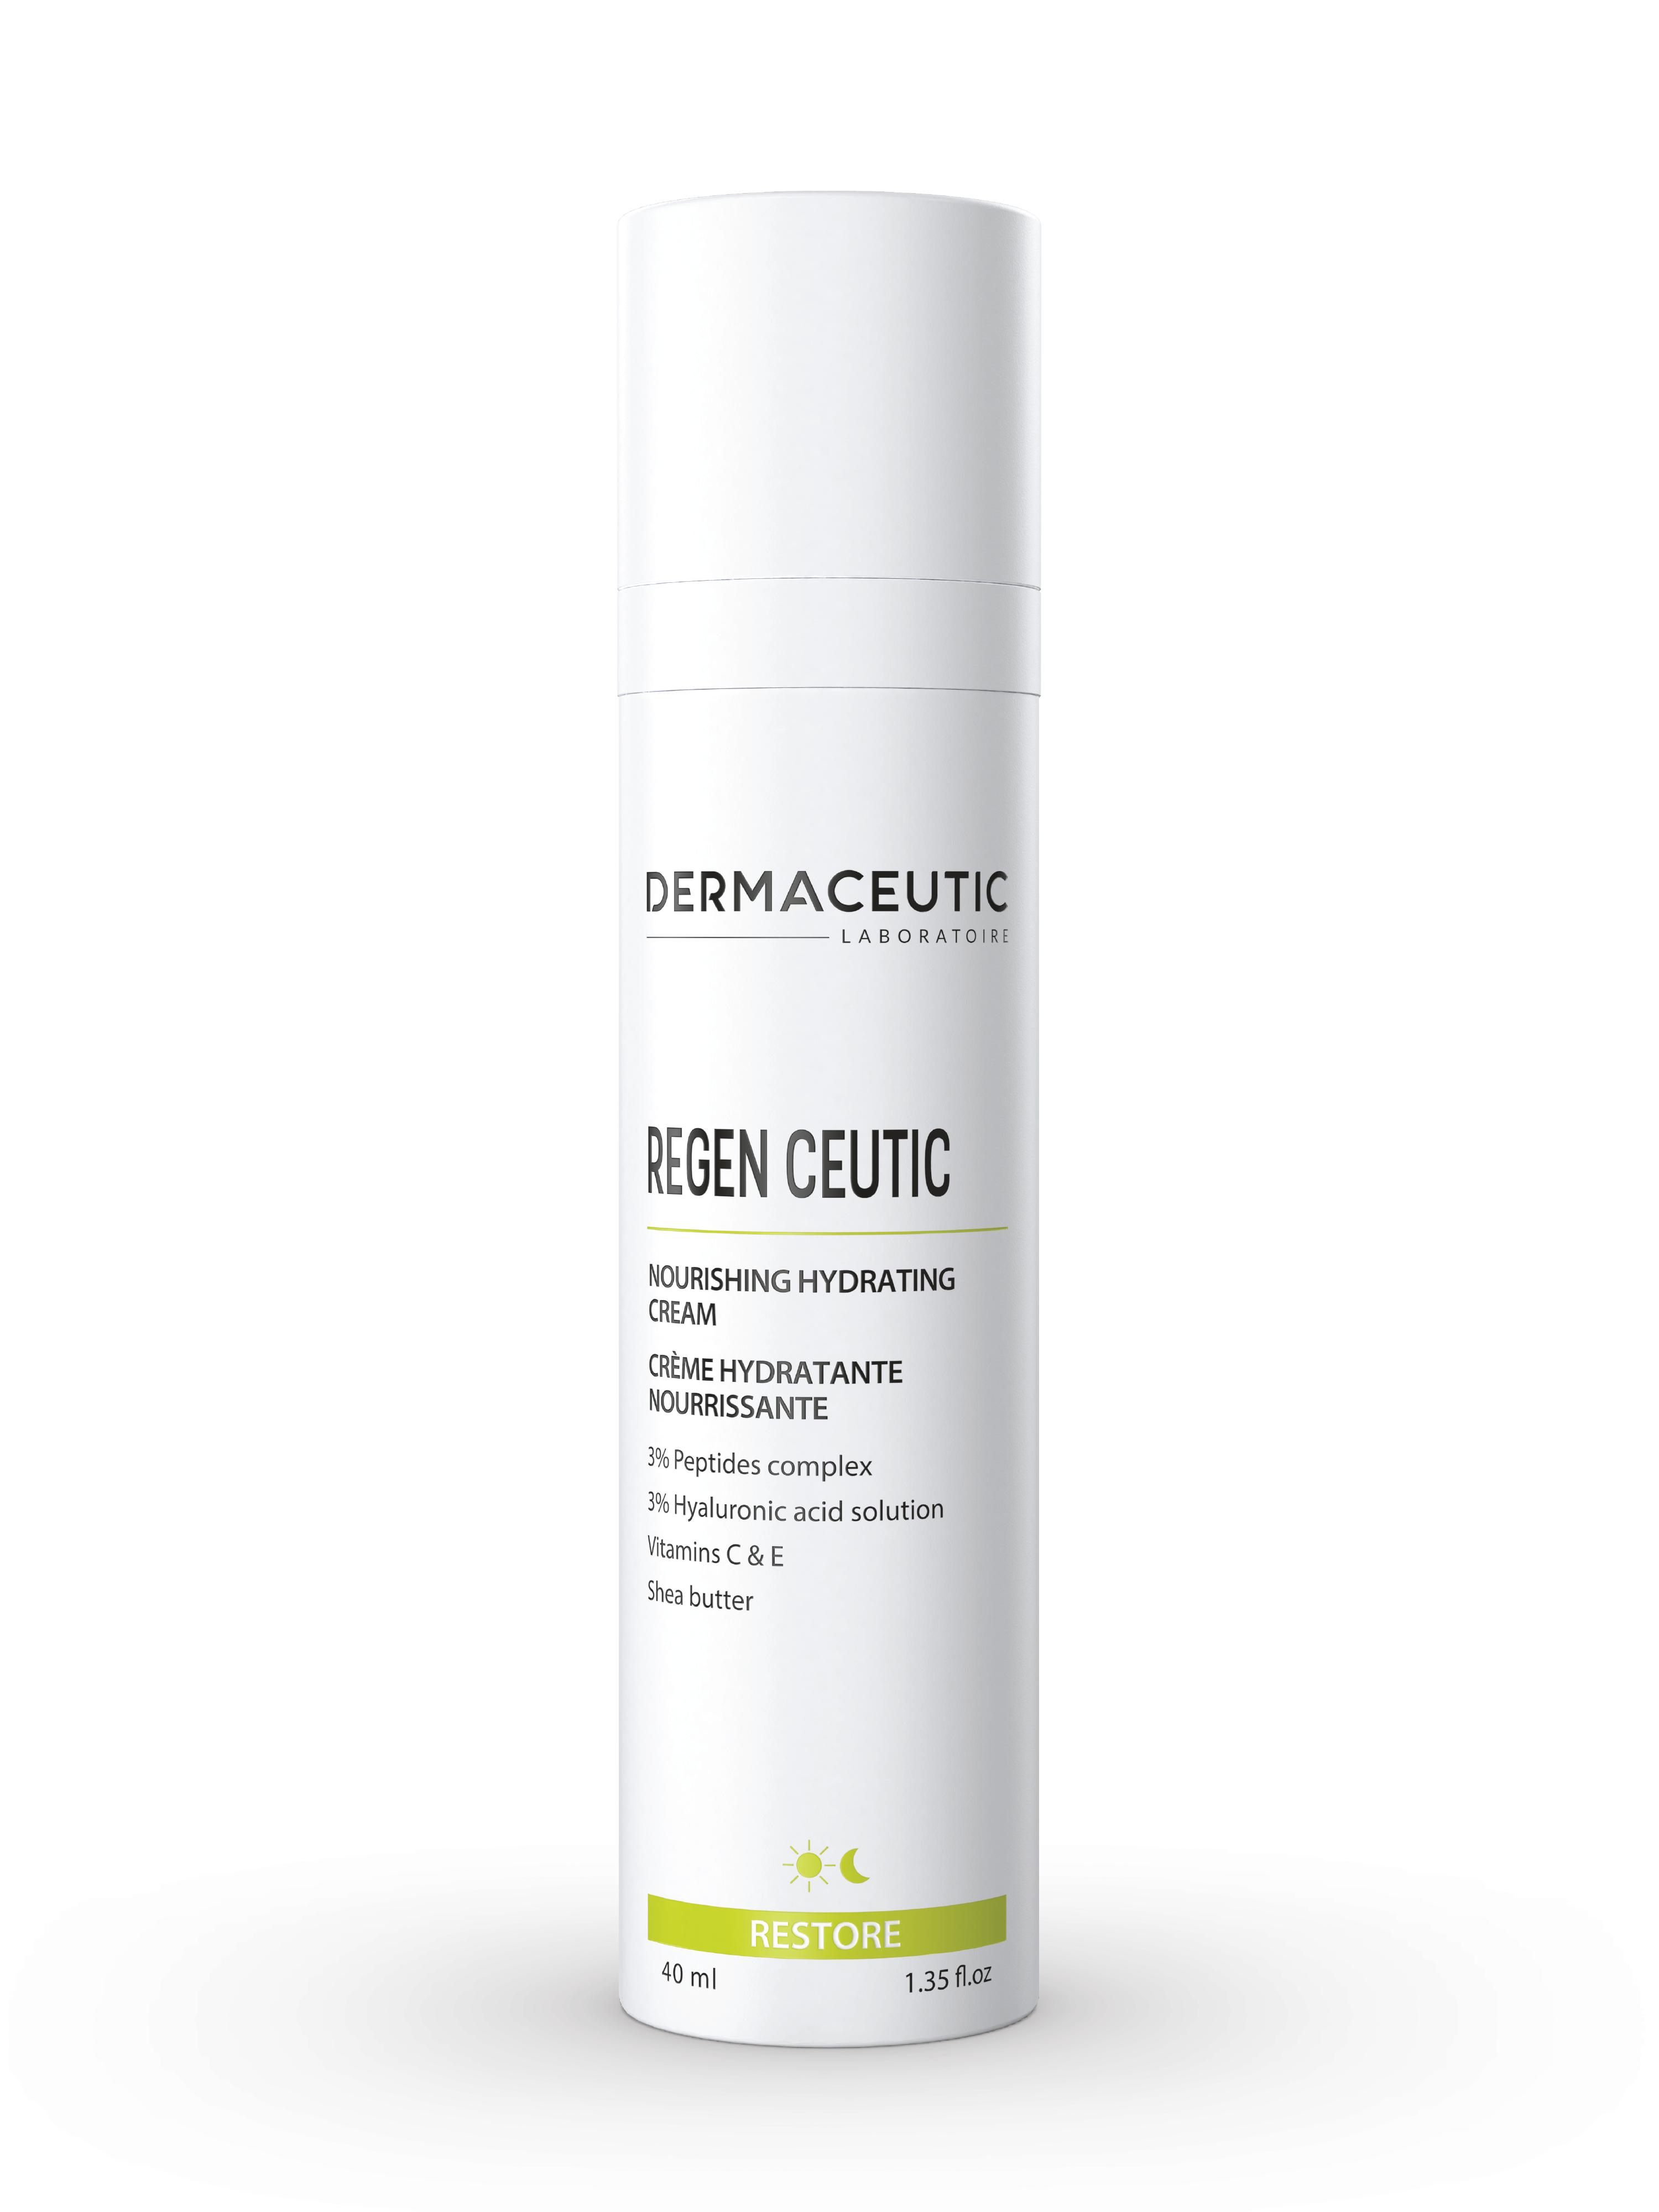 Dermaceutic Regen Ceutic Nourishing Hydrating Cream, 40 ml